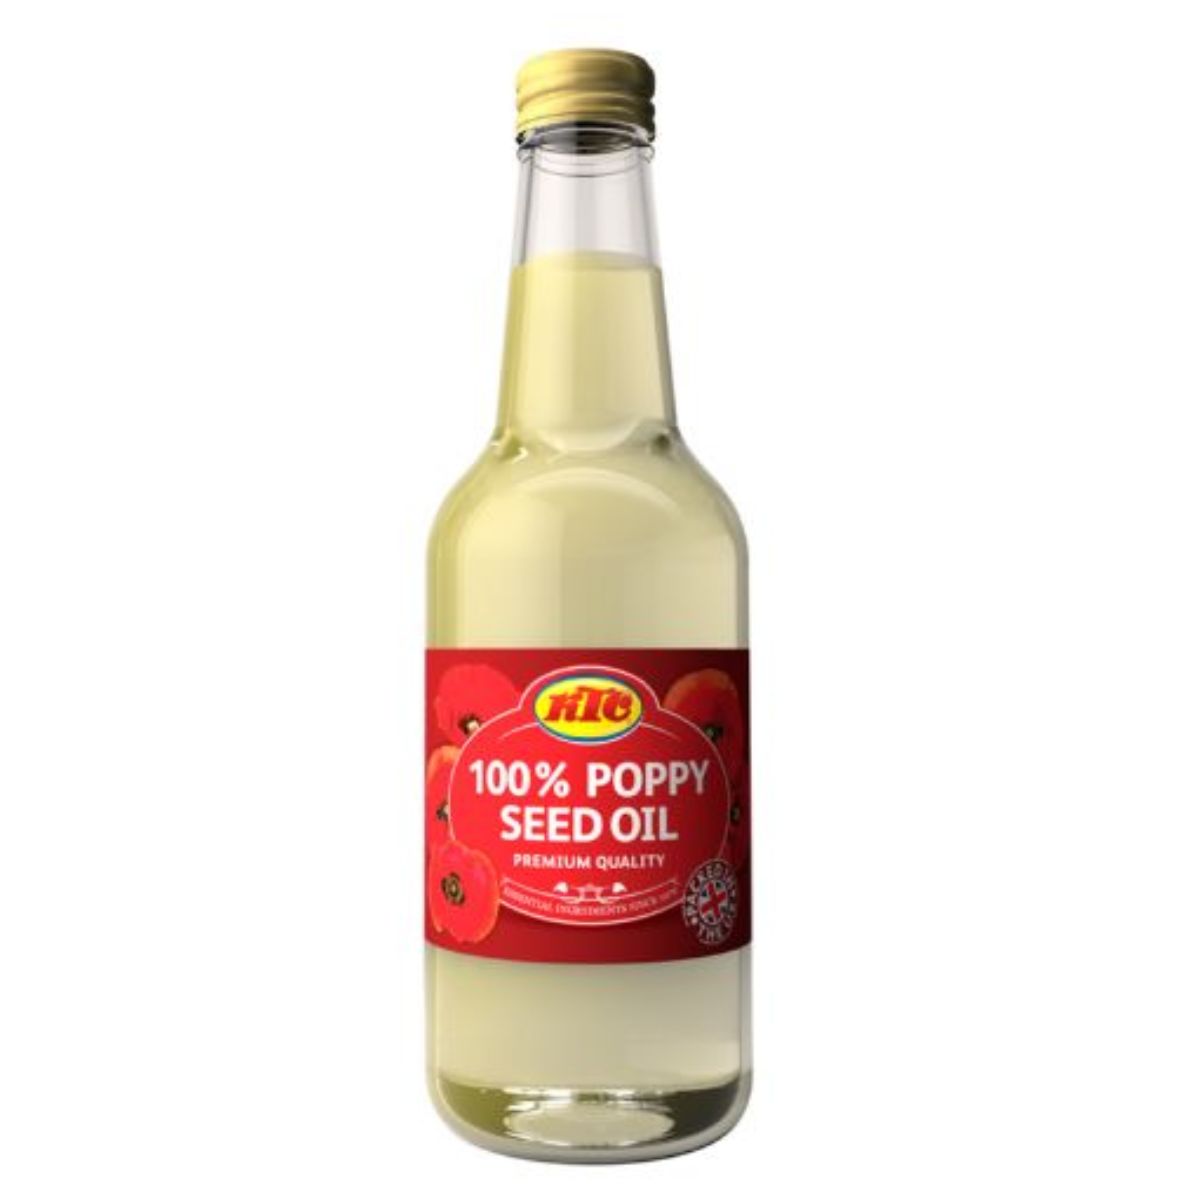 A bottle of KTC - Poppyseed Oil - 250ml.